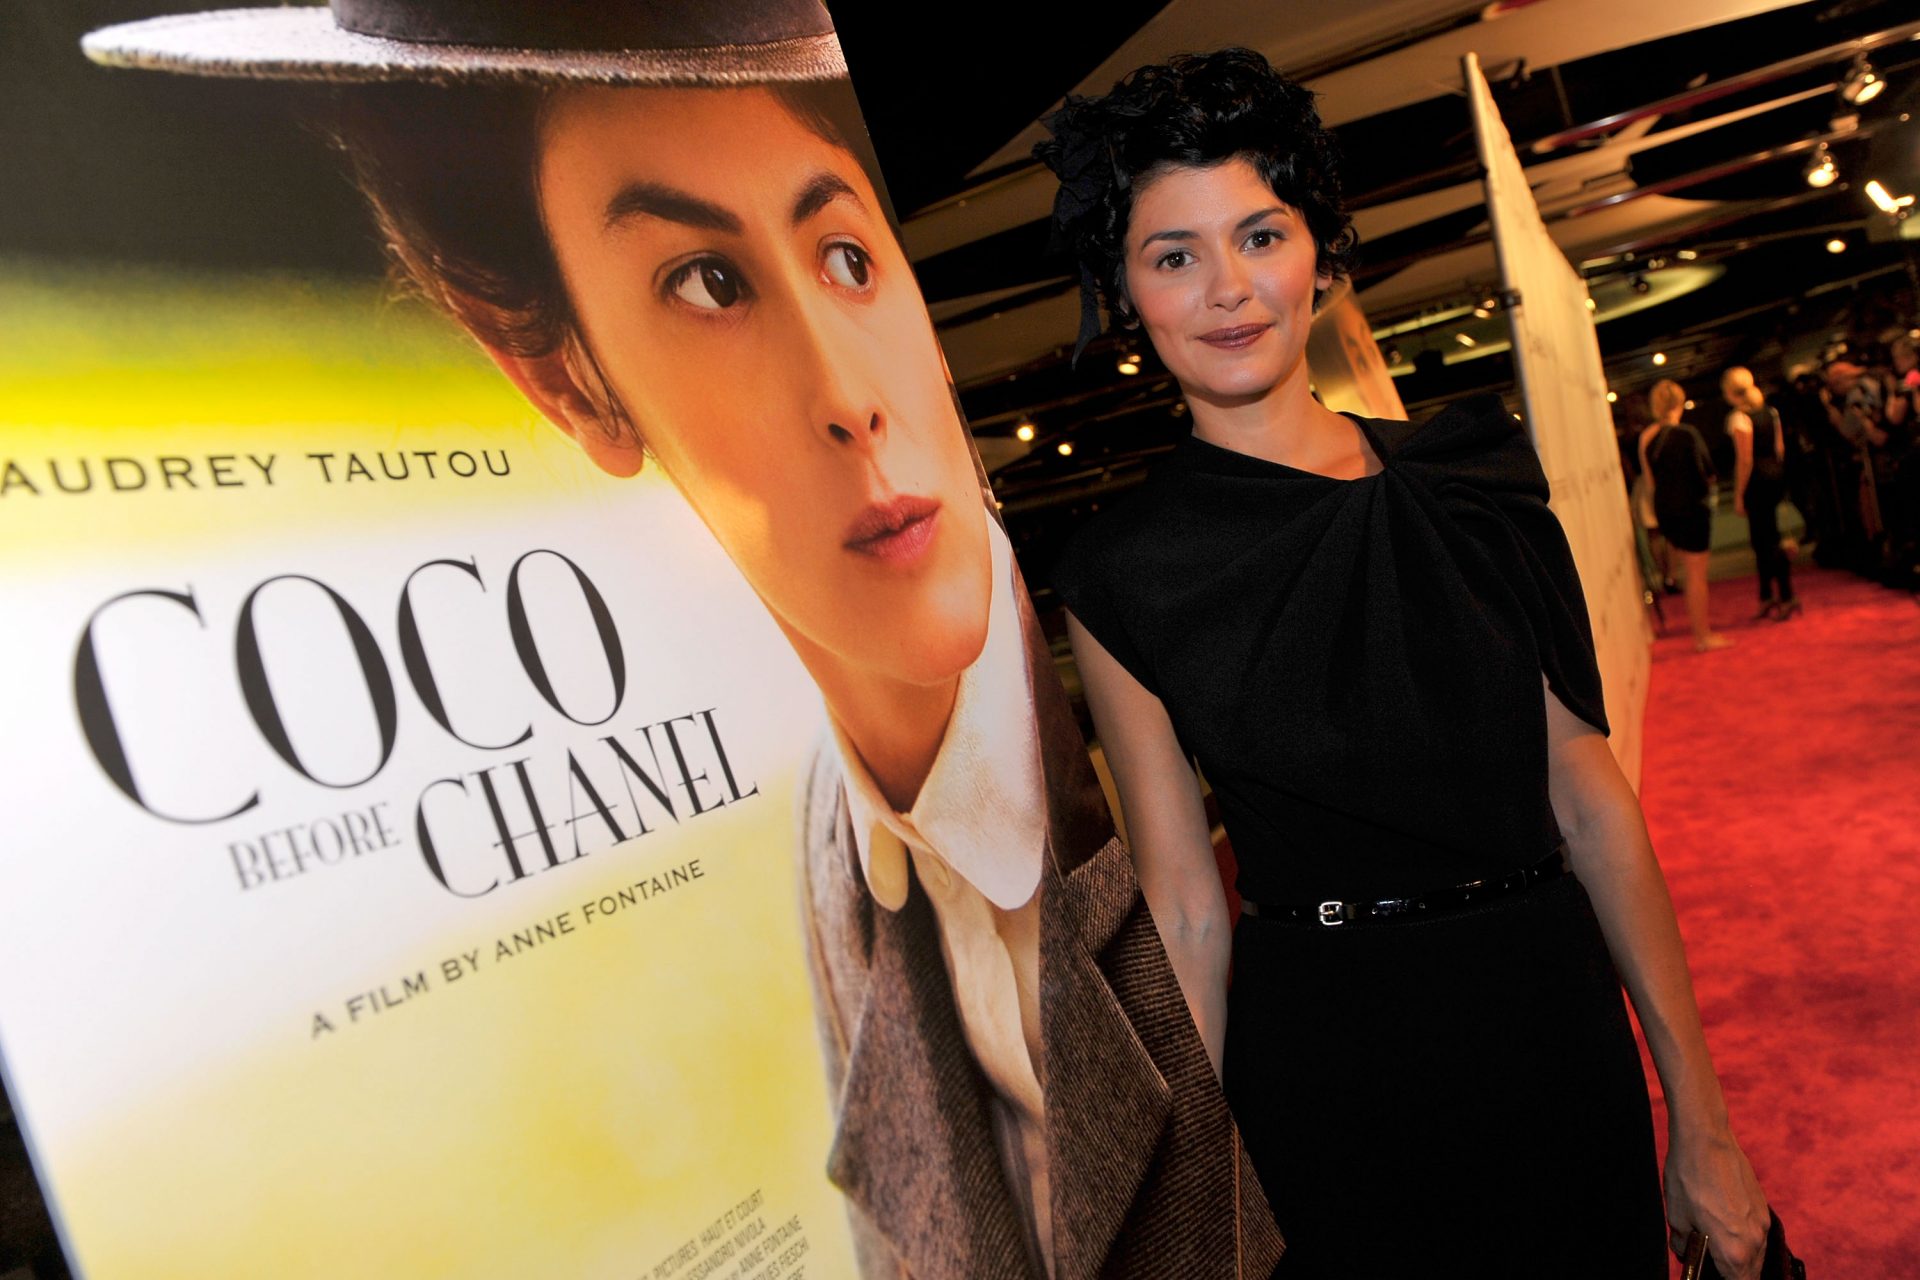 <p>La storia di Coco Chanel, prima di diventare Coco: questo film francese del 2009, nel ripercorrere la difficile e controversa vita della stilista francese, interpretata da Audrey Tatou, ci aiuta a comprendere anche l'entità e il valore dell'eredità che ci ha lasciato.</p> <p><strong><a href="https://www.msn.com/it-it/notizie/mondo/i-segreti-di-coco-chanel/ss-AA1fHB21">VEDI ANCHE: I segreti di Coco Chanel</a></strong></p>